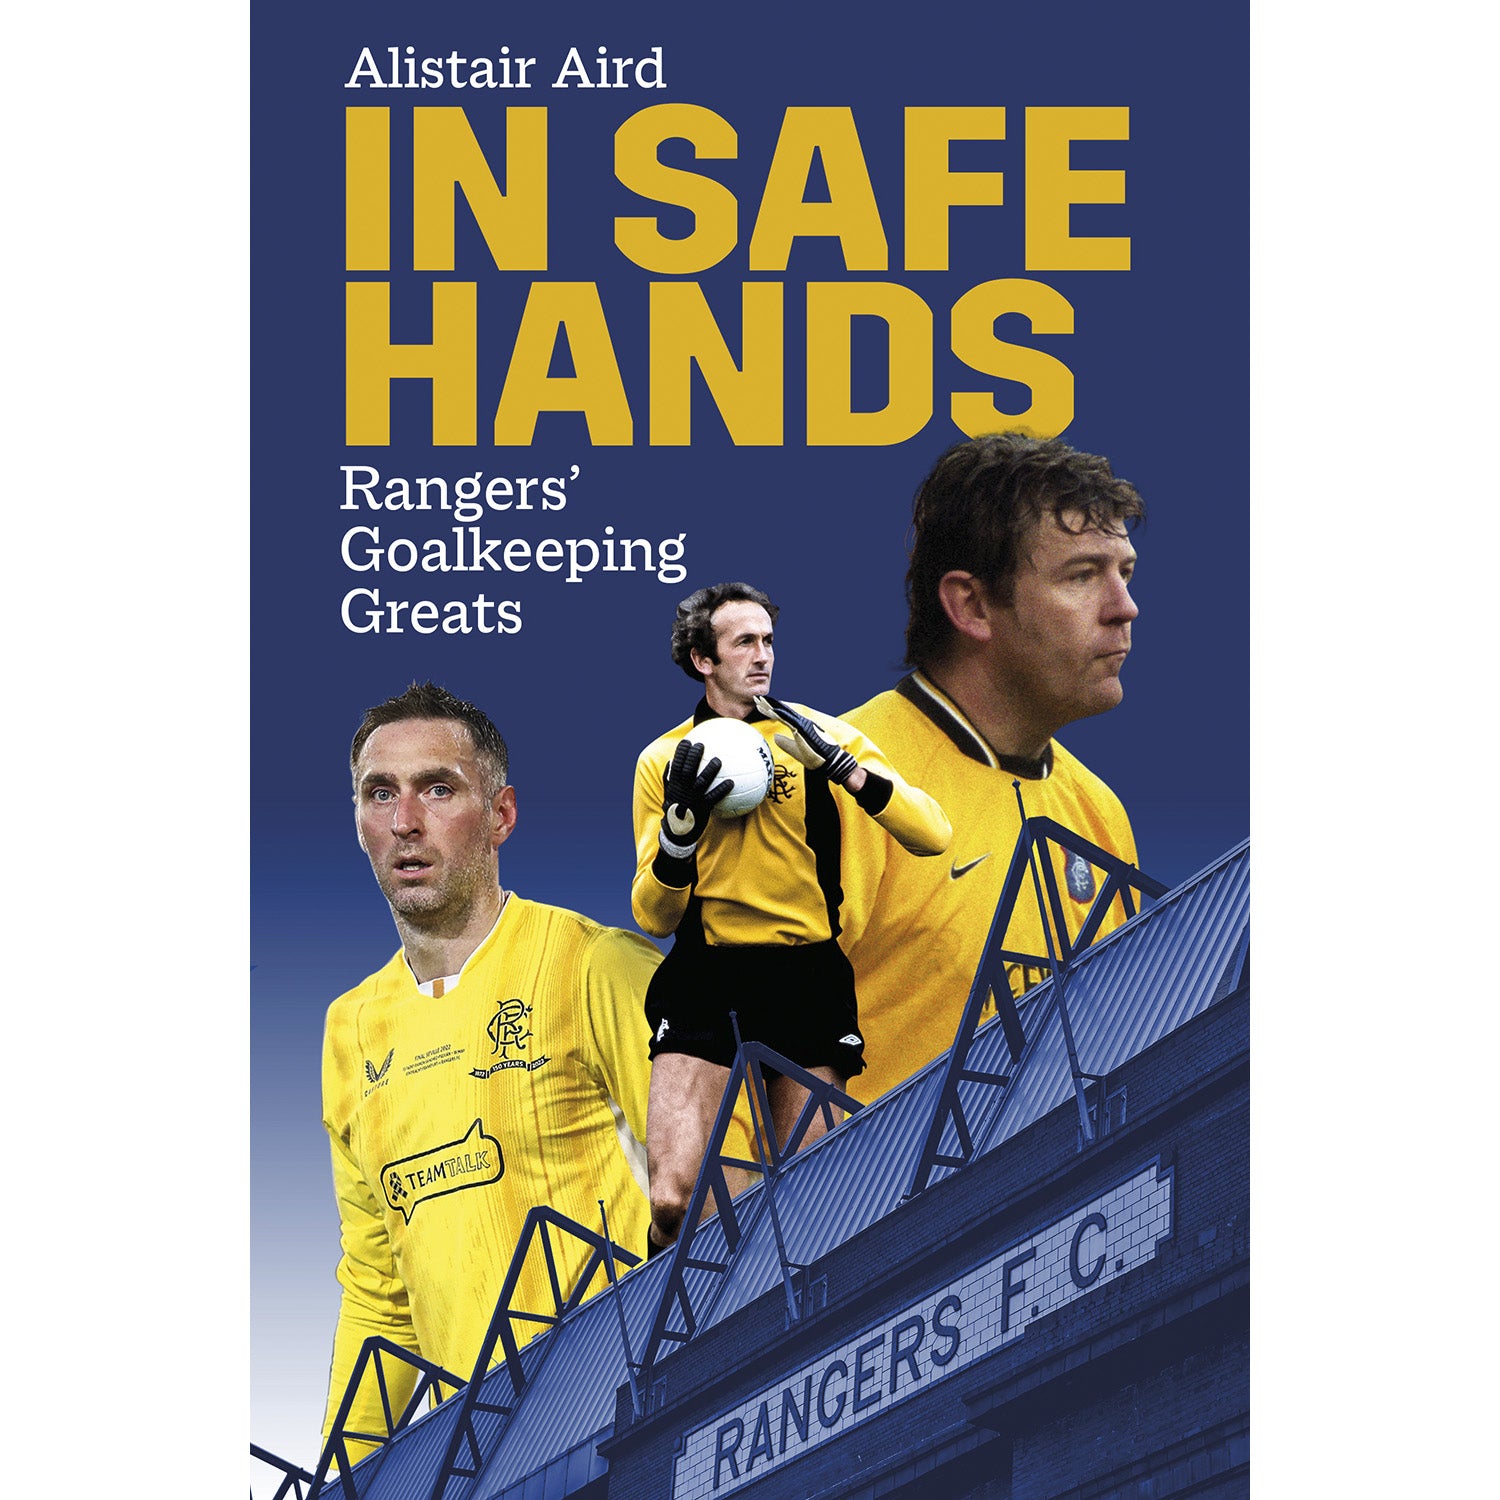 In Safe Hands – Rangers' Goalkeeping Greats